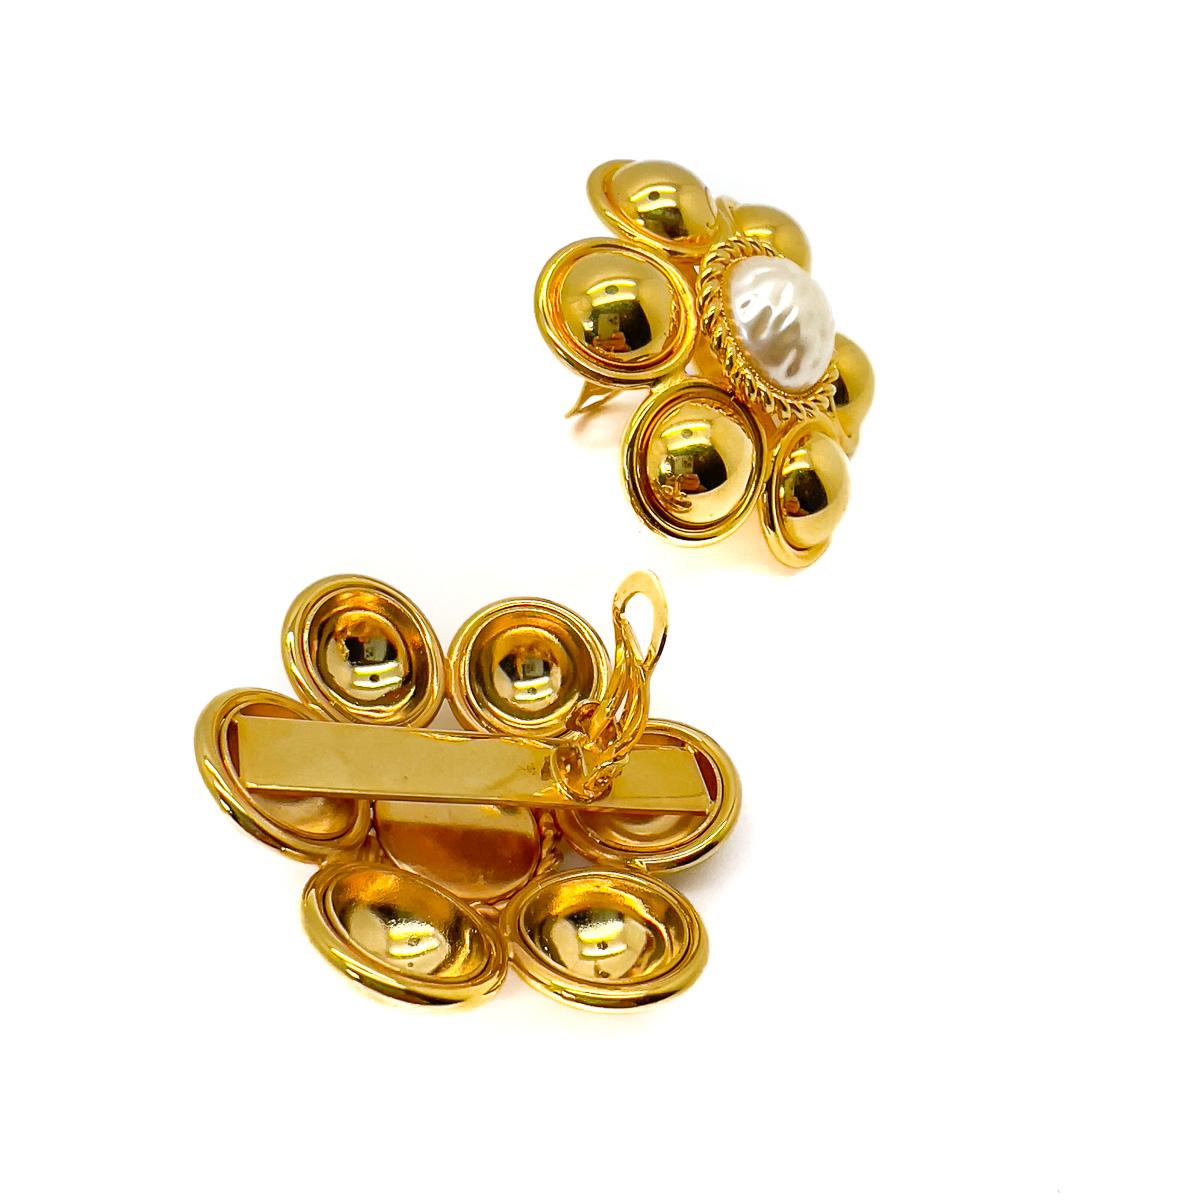 Ein großartiges Paar Vintage Statement Gold Pearl Flower Earrings. Mit einer großen, glänzenden Perle, umgeben von reichen, lebendigen Goldkuppeln. Ein atemberaubendes Paar Statement-Ohrringe, das jeden Look aufwertet.
Eine unsignierte Schönheit.